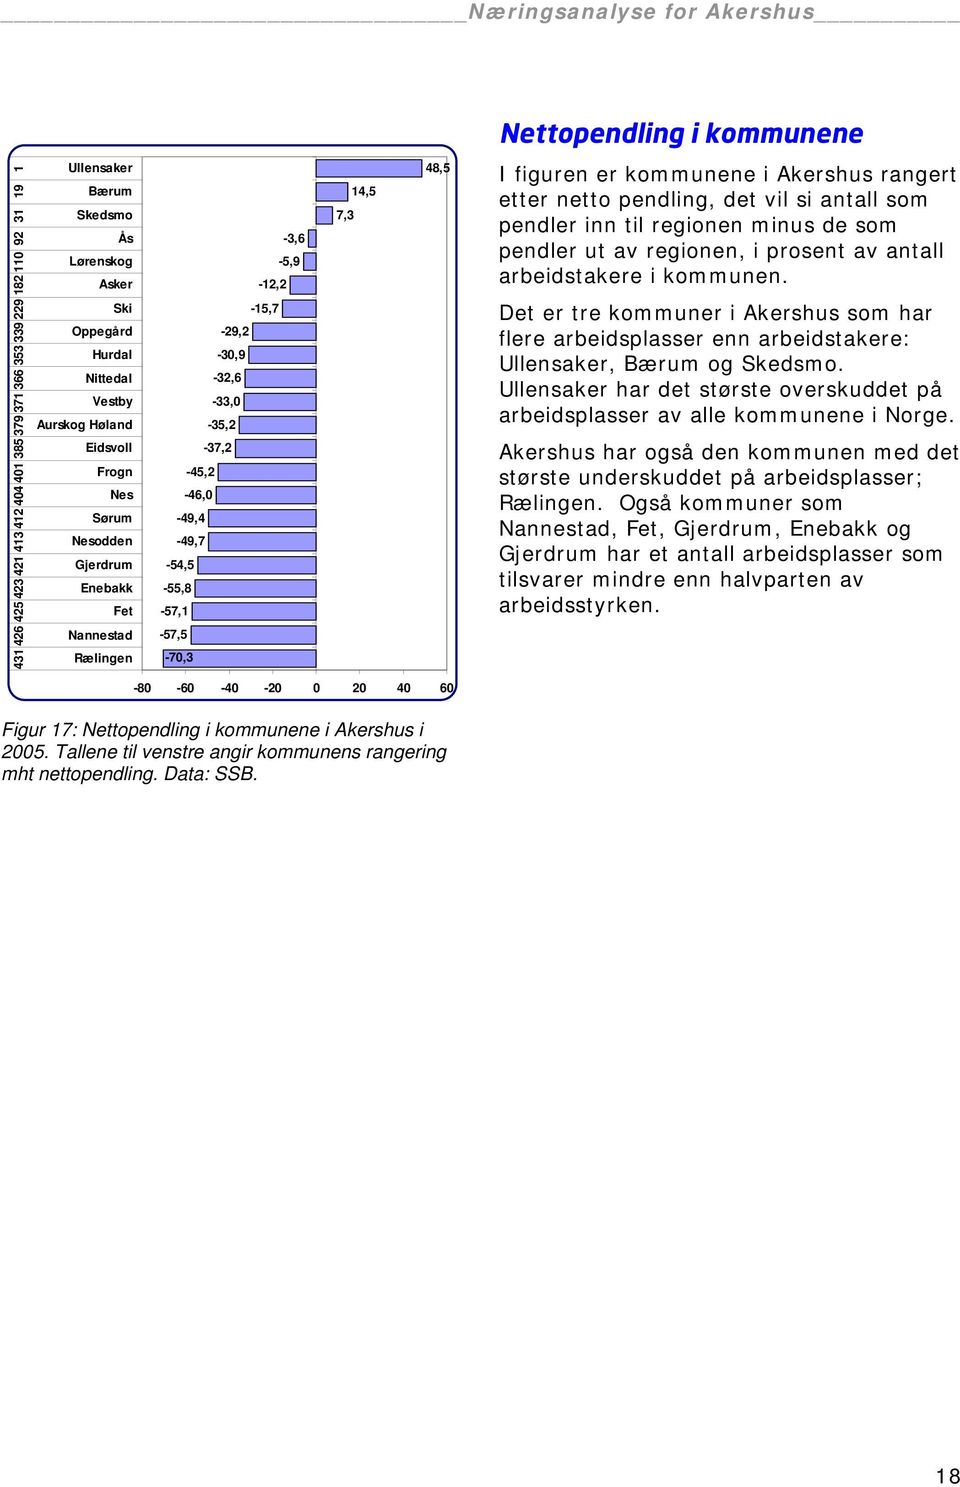 er kommunene i Akershus rangert etter netto pendling, det vil si antall som pendler inn til regionen minus de som pendler ut av regionen, i prosent av antall arbeidstakere i kommunen.